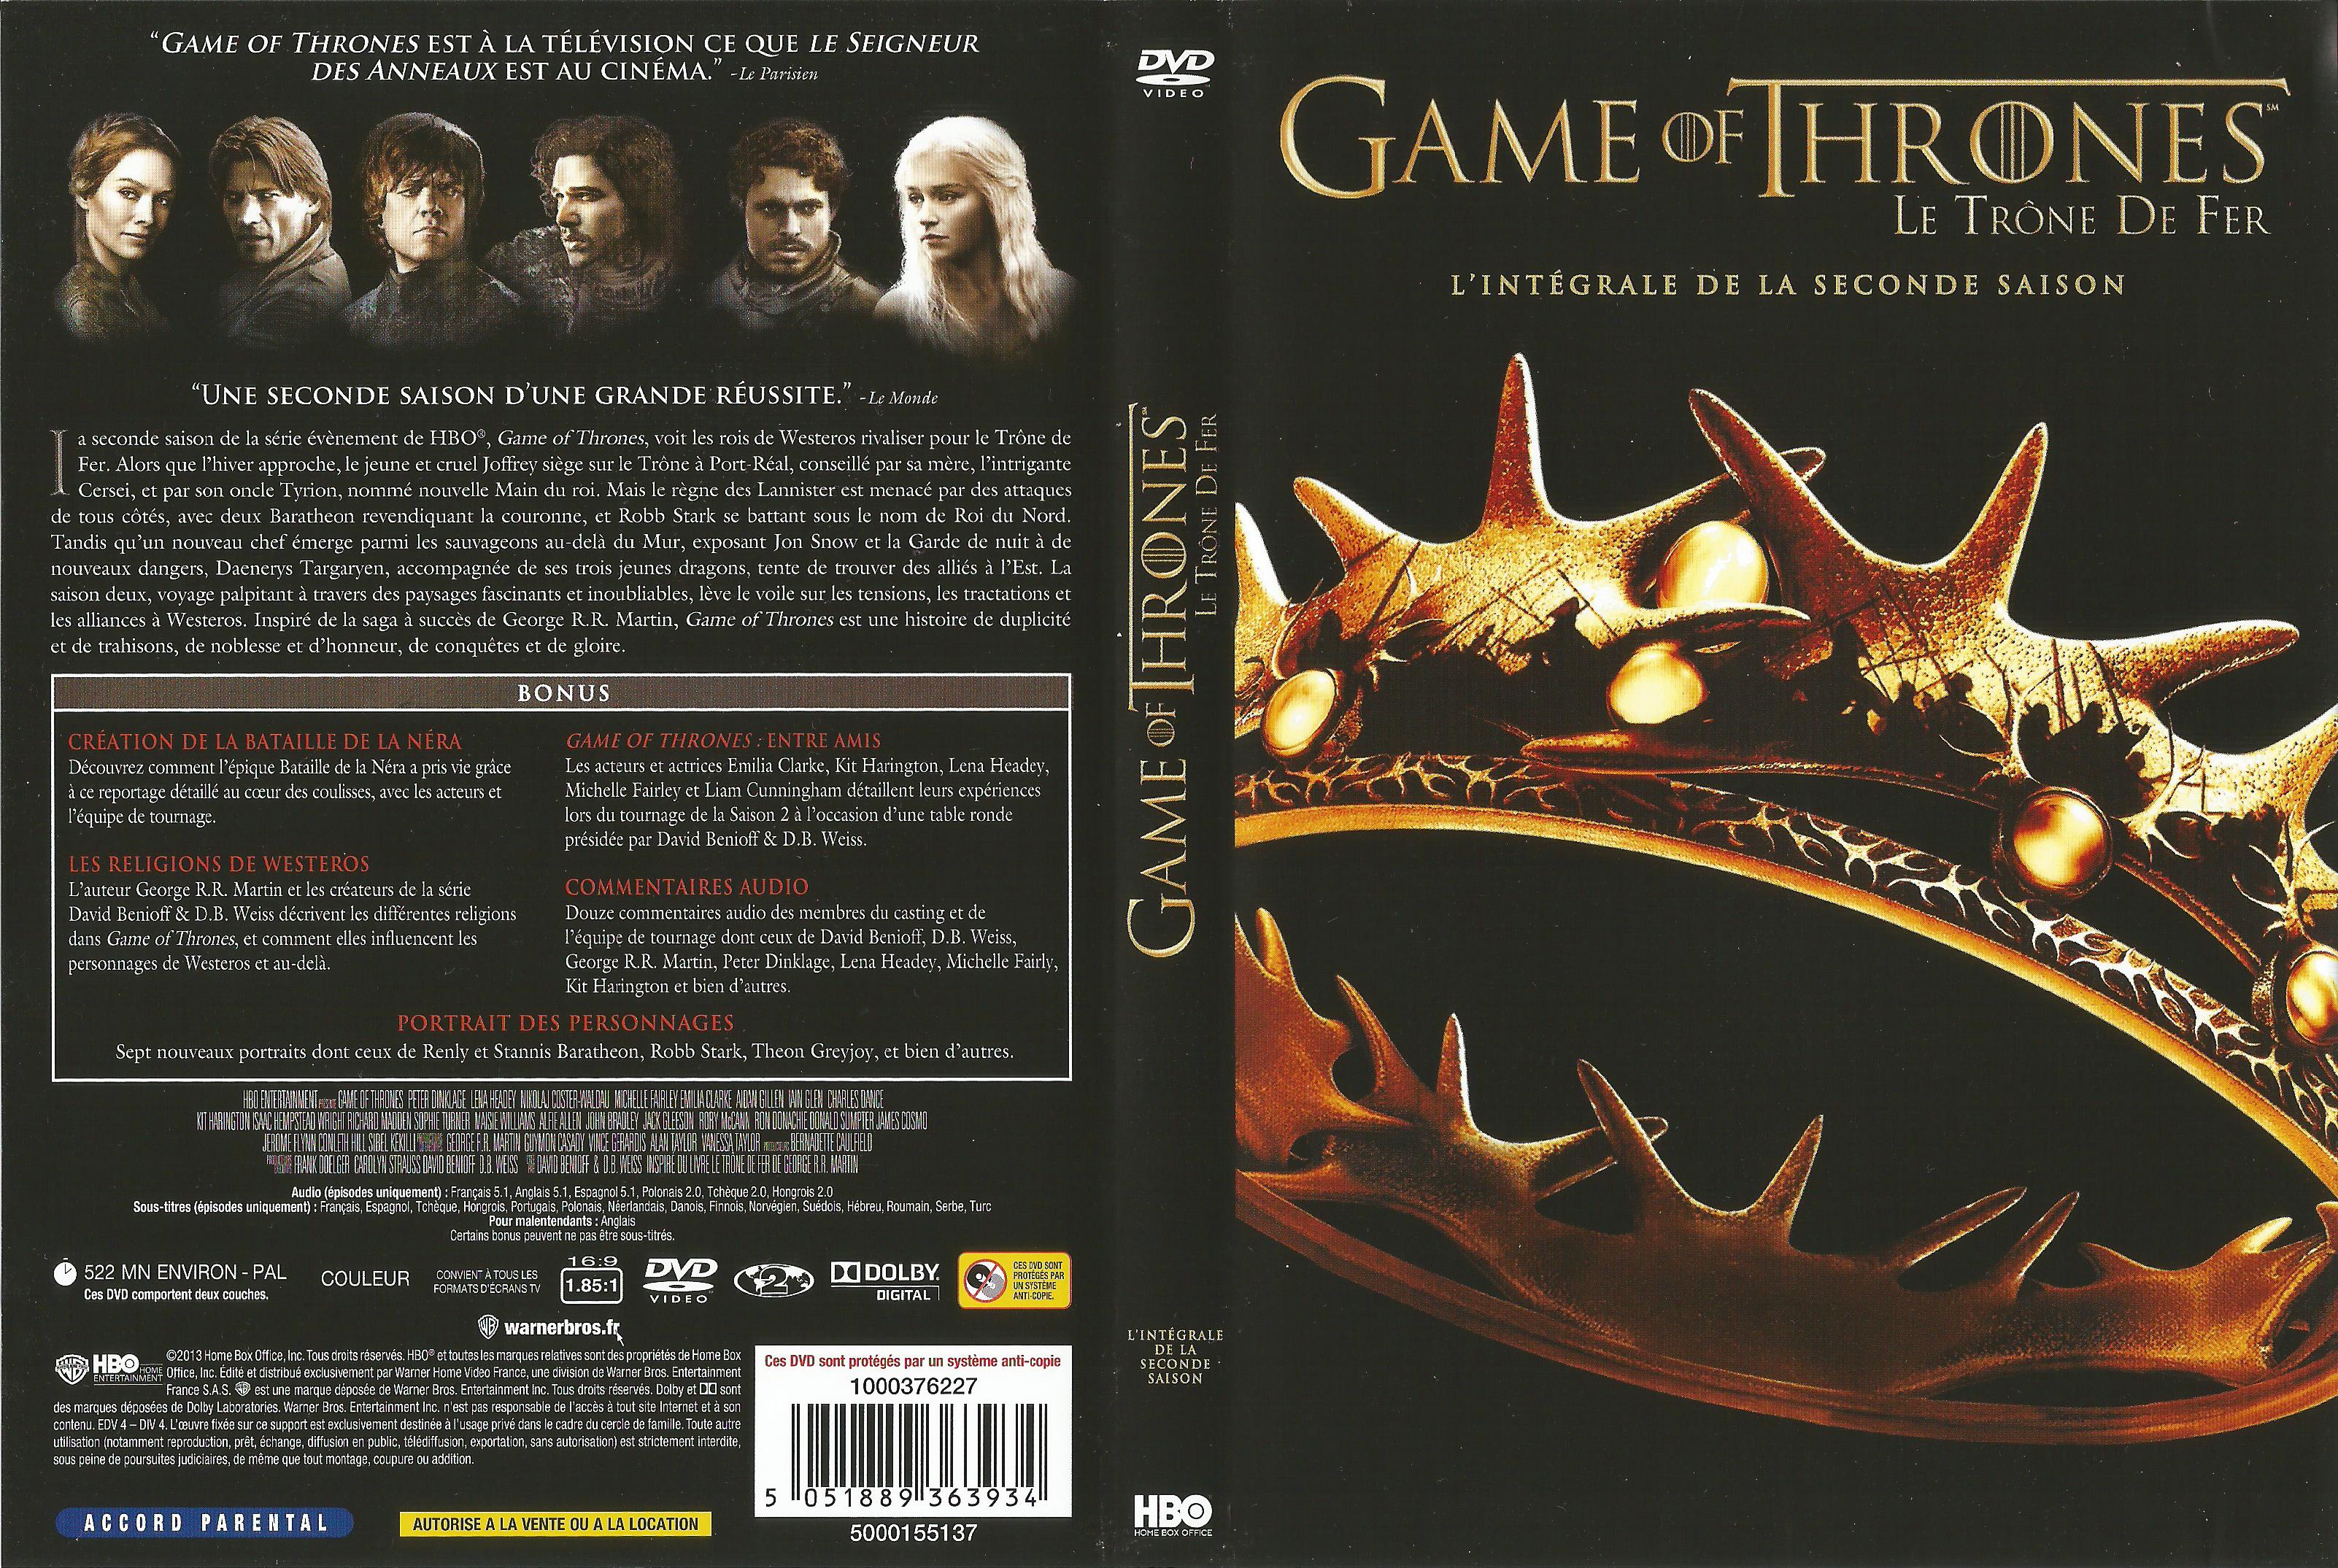 Jaquette DVD Game of thrones (le trone de fer) Saison 2 v2